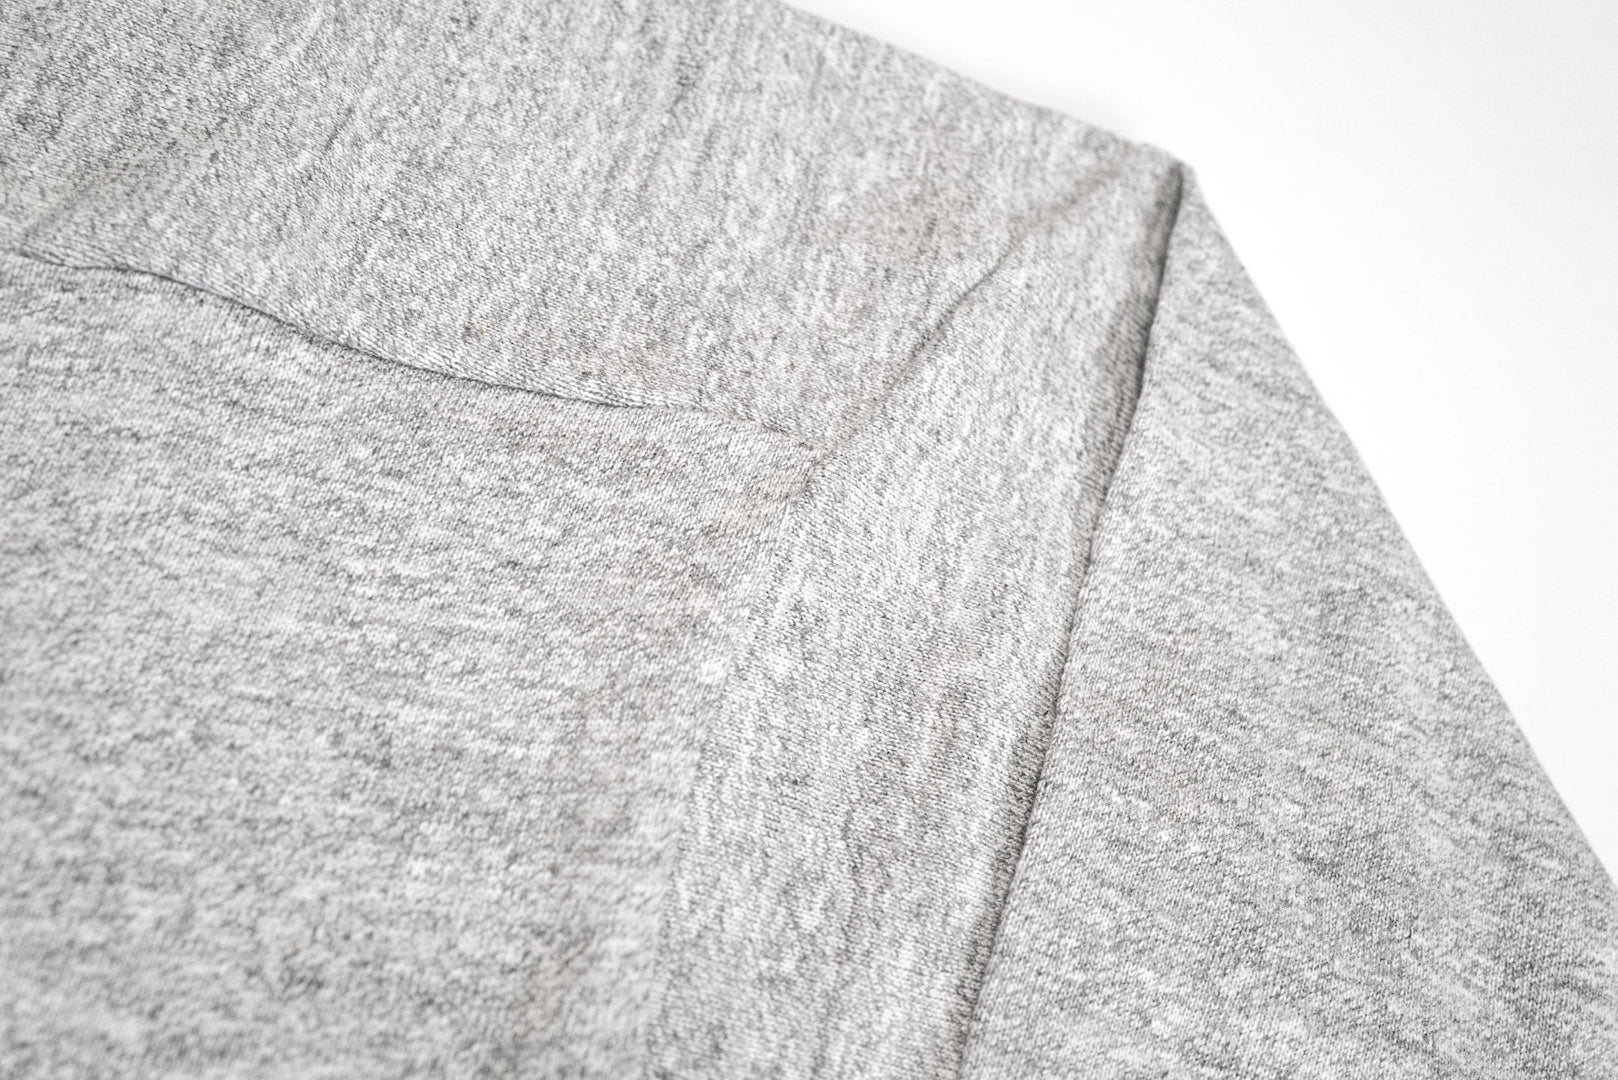 Warehouse "Bamboo Textured" 3/4 Sleeve Football Tee (Grey)